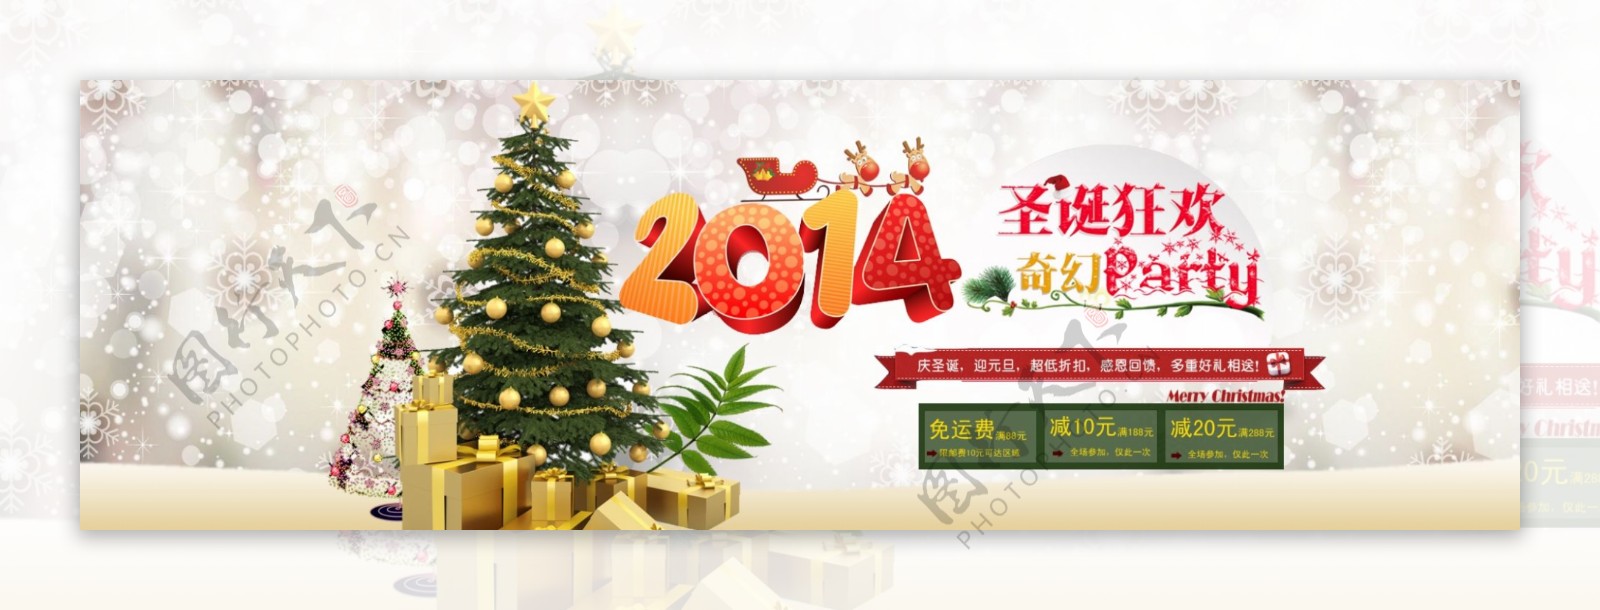 2014圣诞狂欢大海报